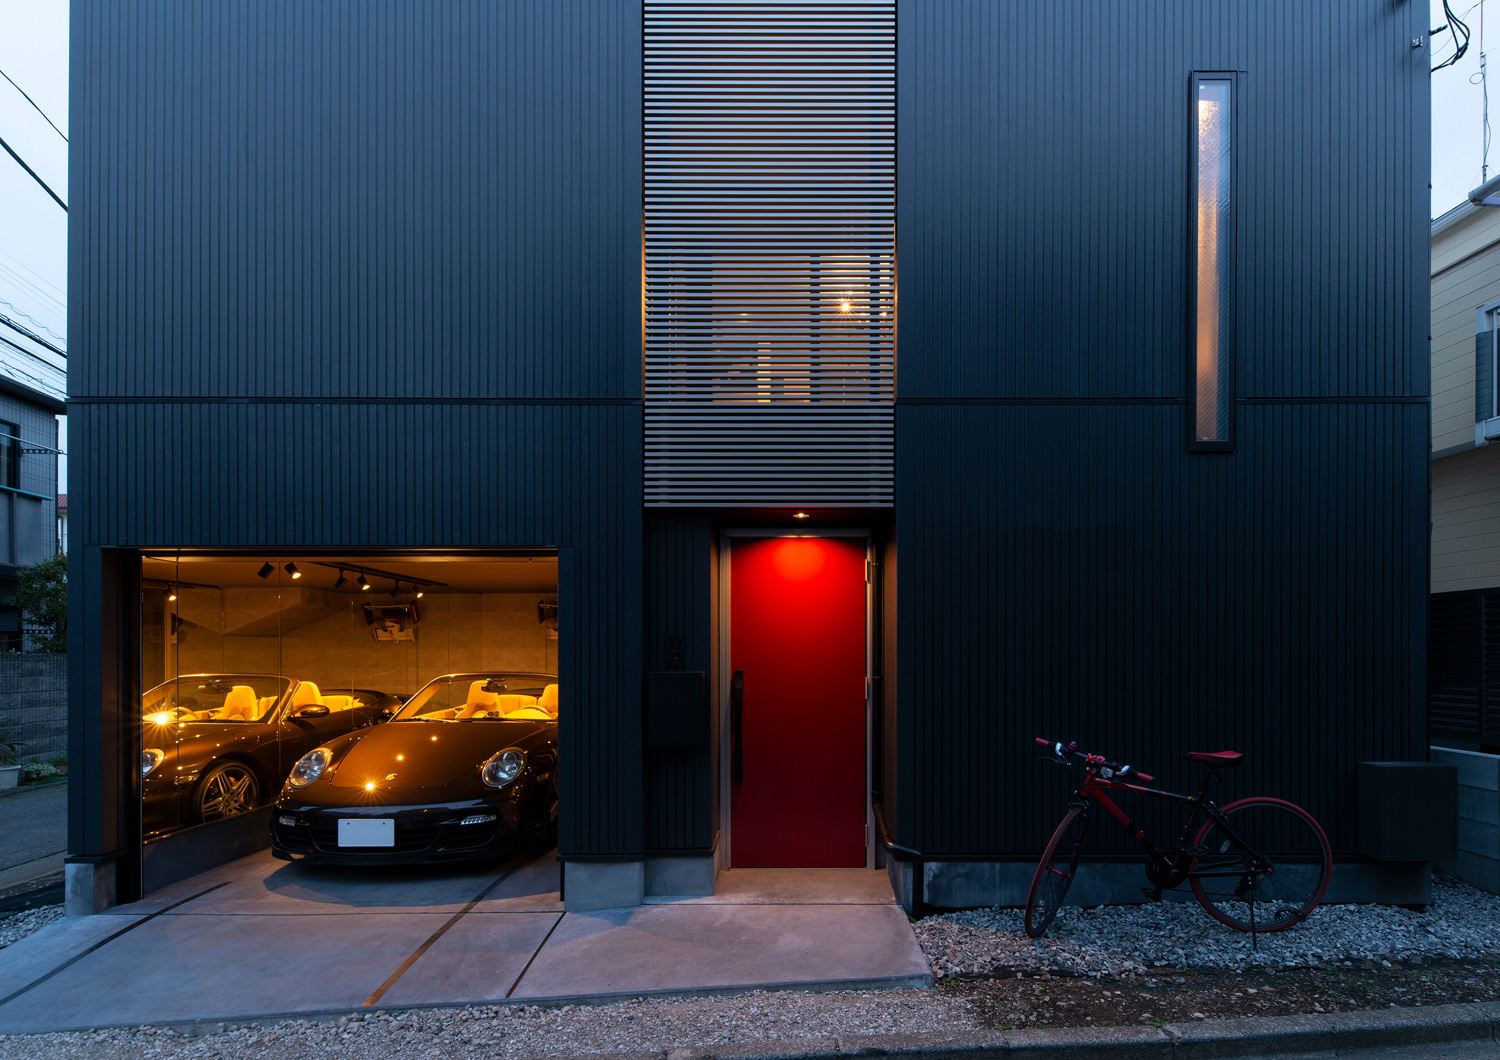 インナーガレージがあり、赤い玄関扉が付いた黒い外壁の住宅・デザイン住宅